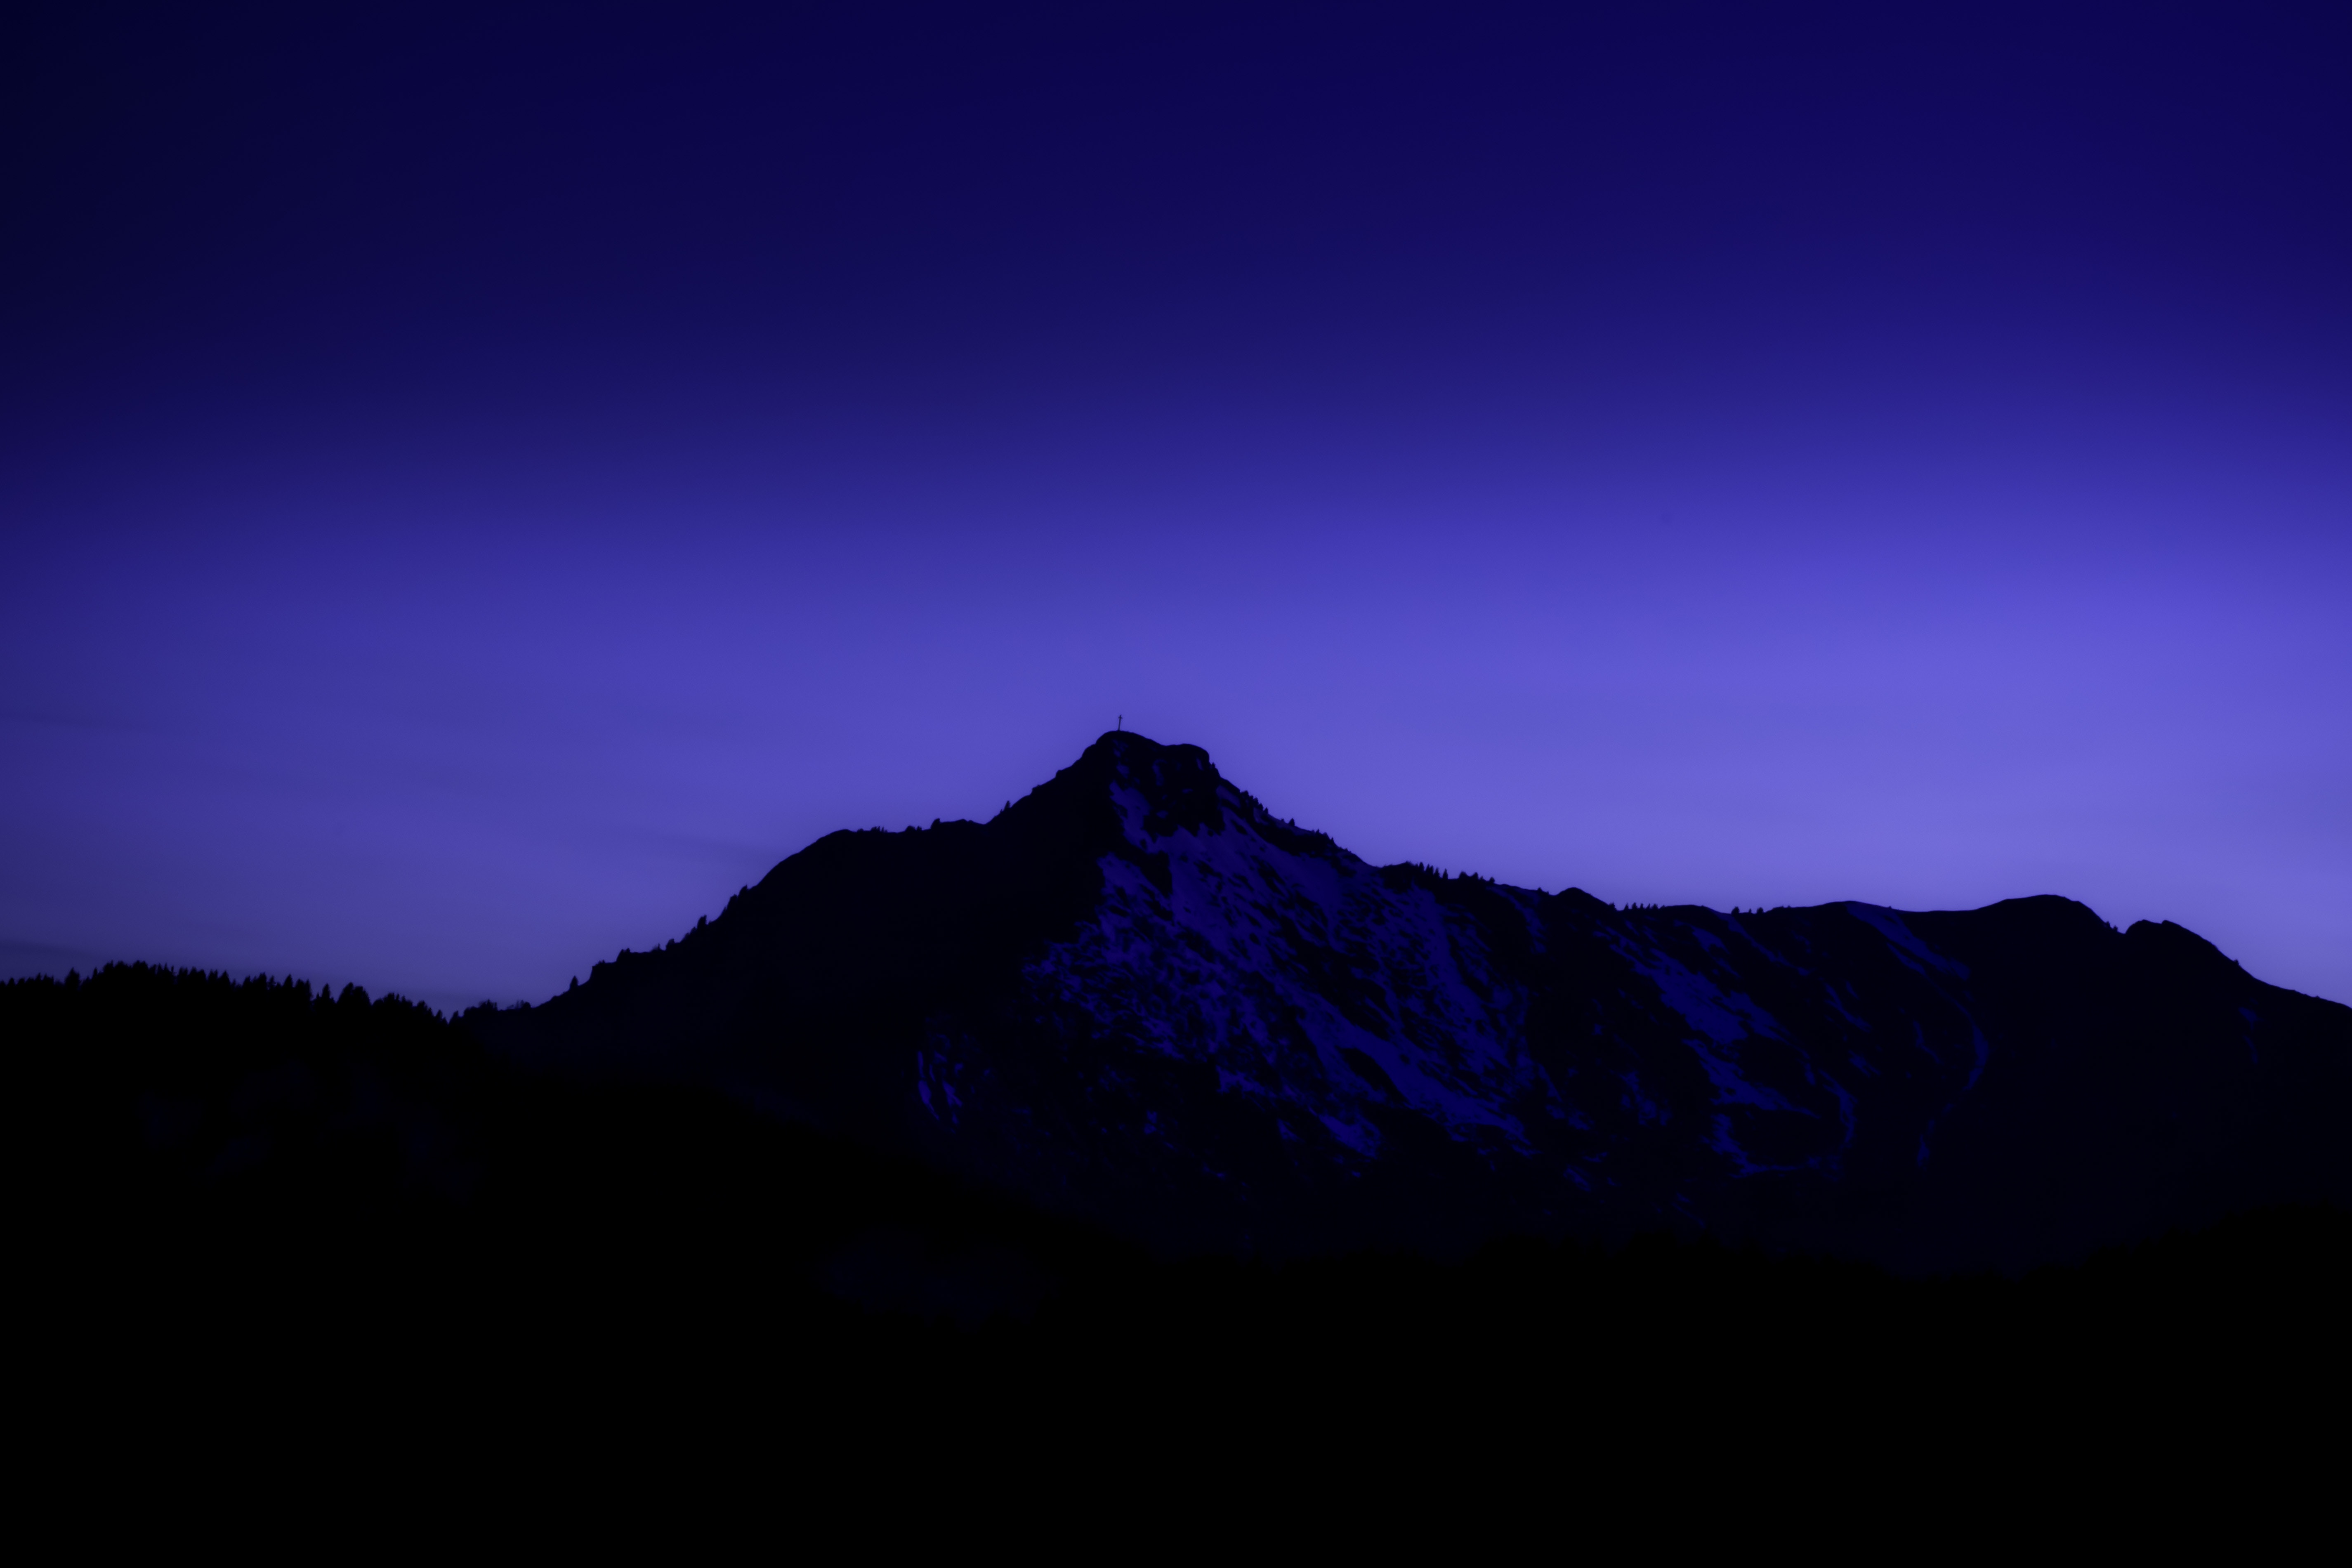 violet, purple, sky, mountains, night, dark